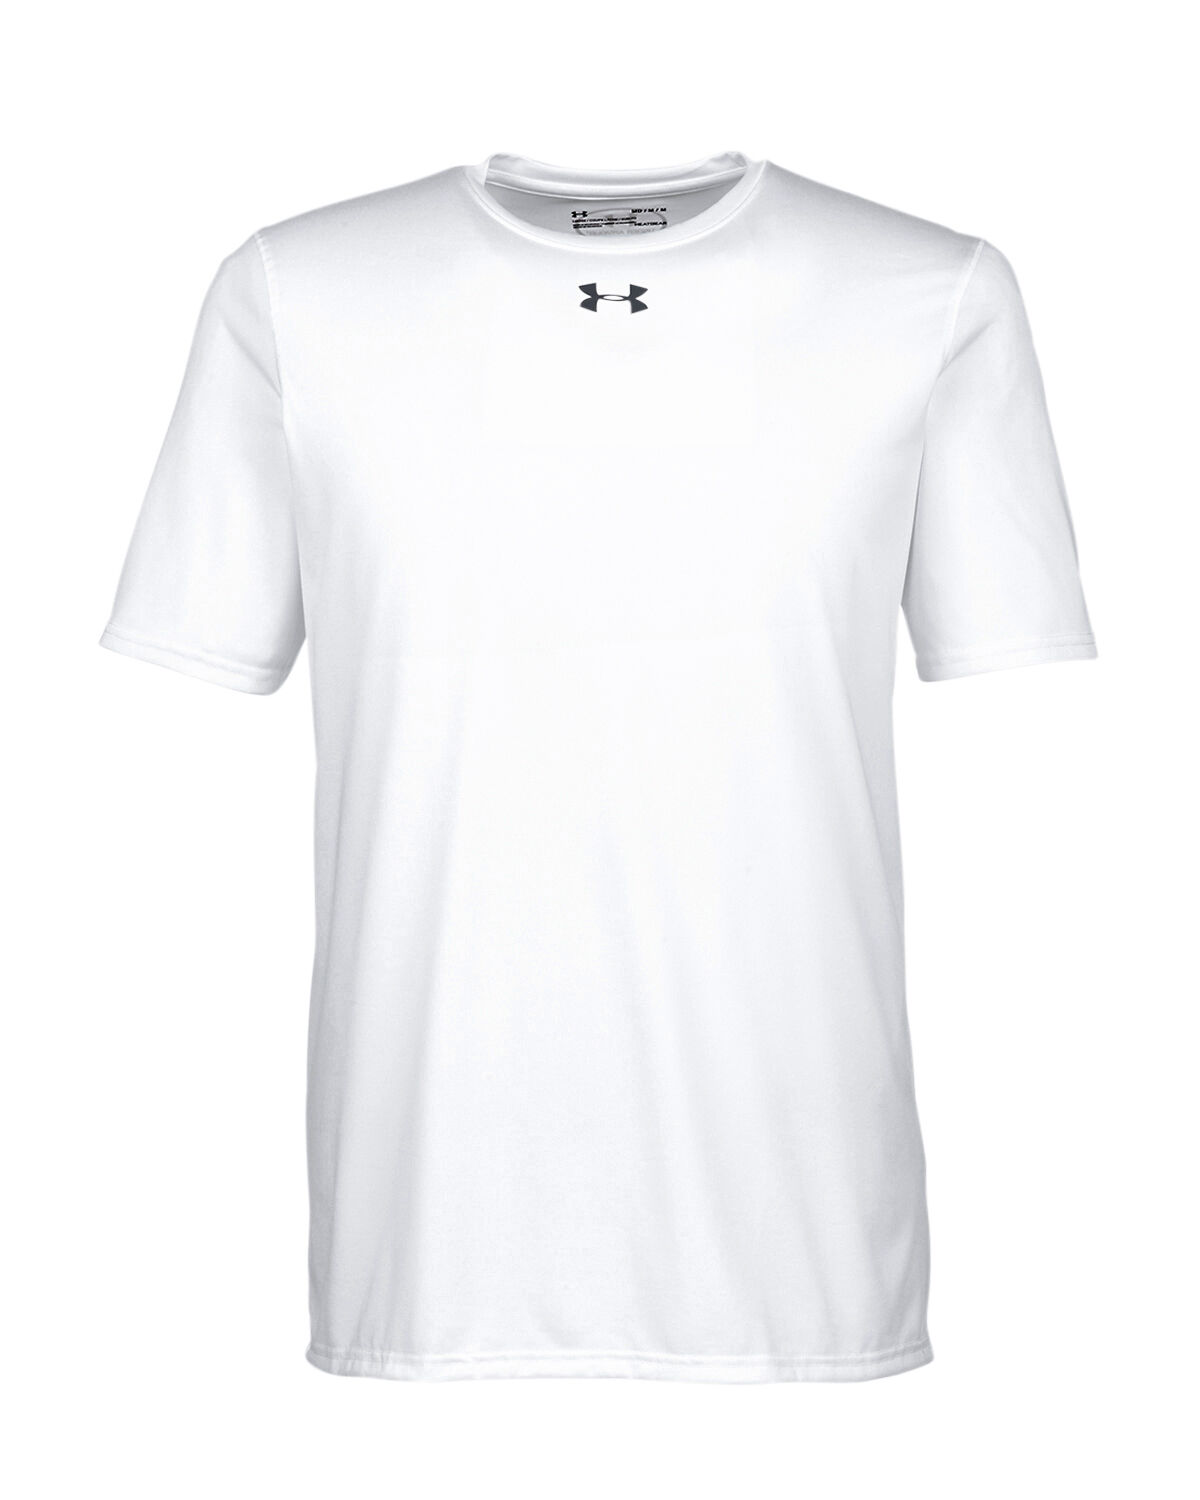 Branded Under Armour Men’s Locker T-Shirt 2.0 White/Graphite